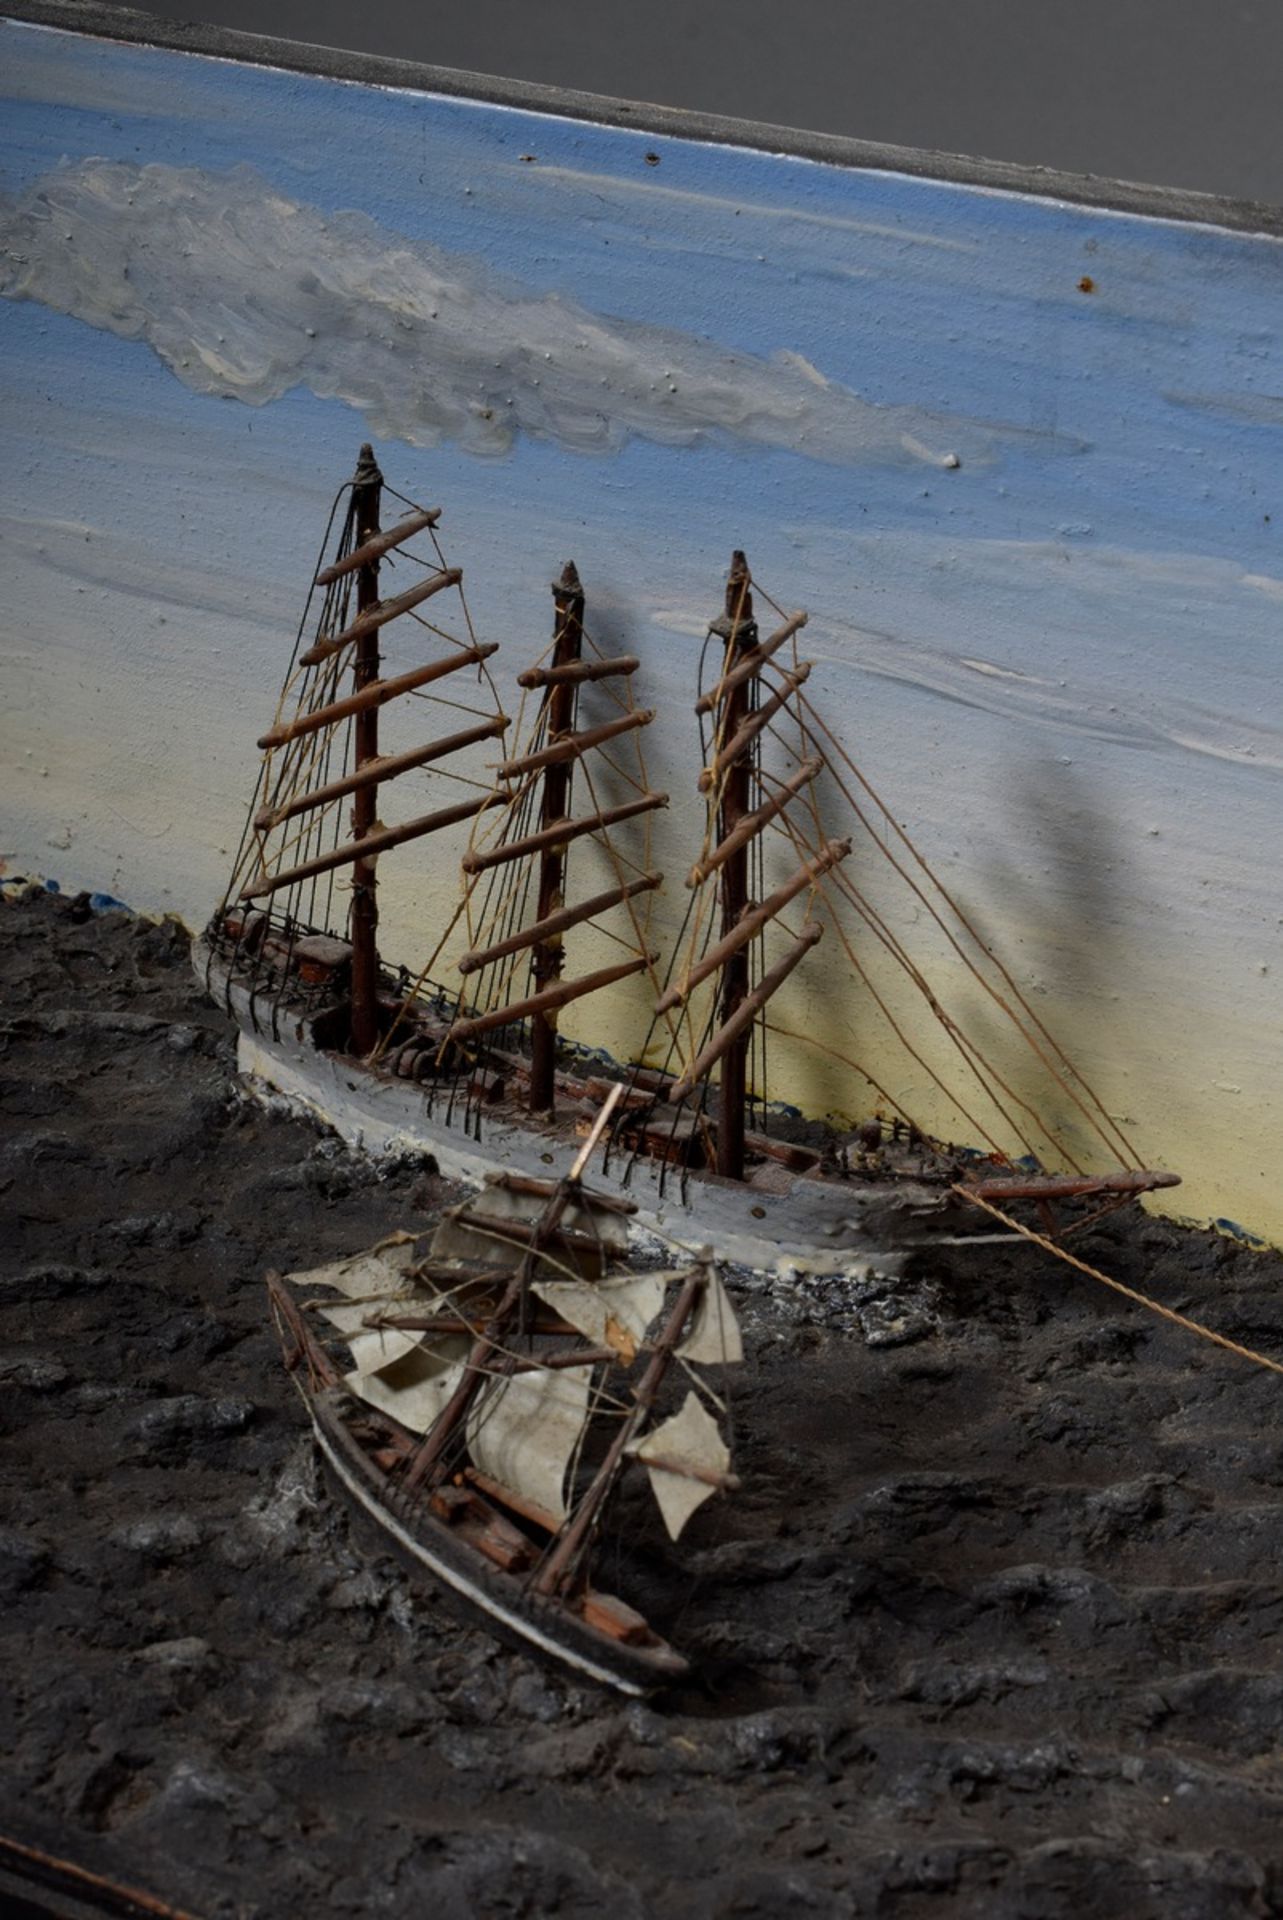 Miniatur Diorama "Schiffsverkehr auf See", Holz farbig gefasst mit teilweise ge - Bild 3 aus 5